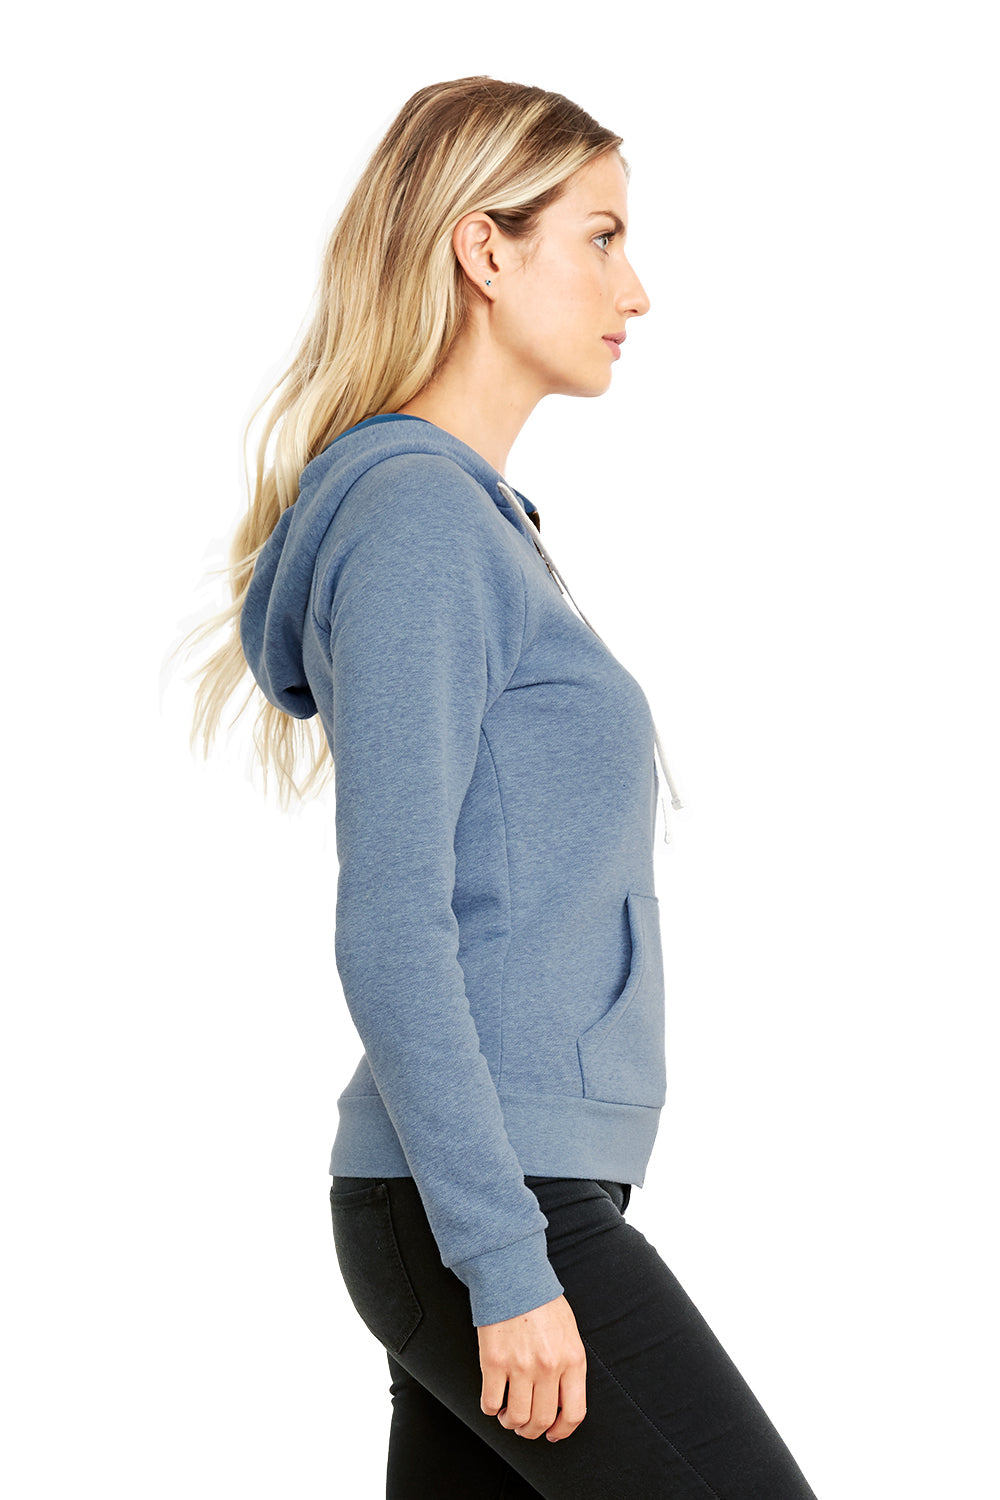 Next Level 9603 Womens PCH Fleece Full Zip Hooded Sweatshirt Hoodie Heather Bay Blue Side